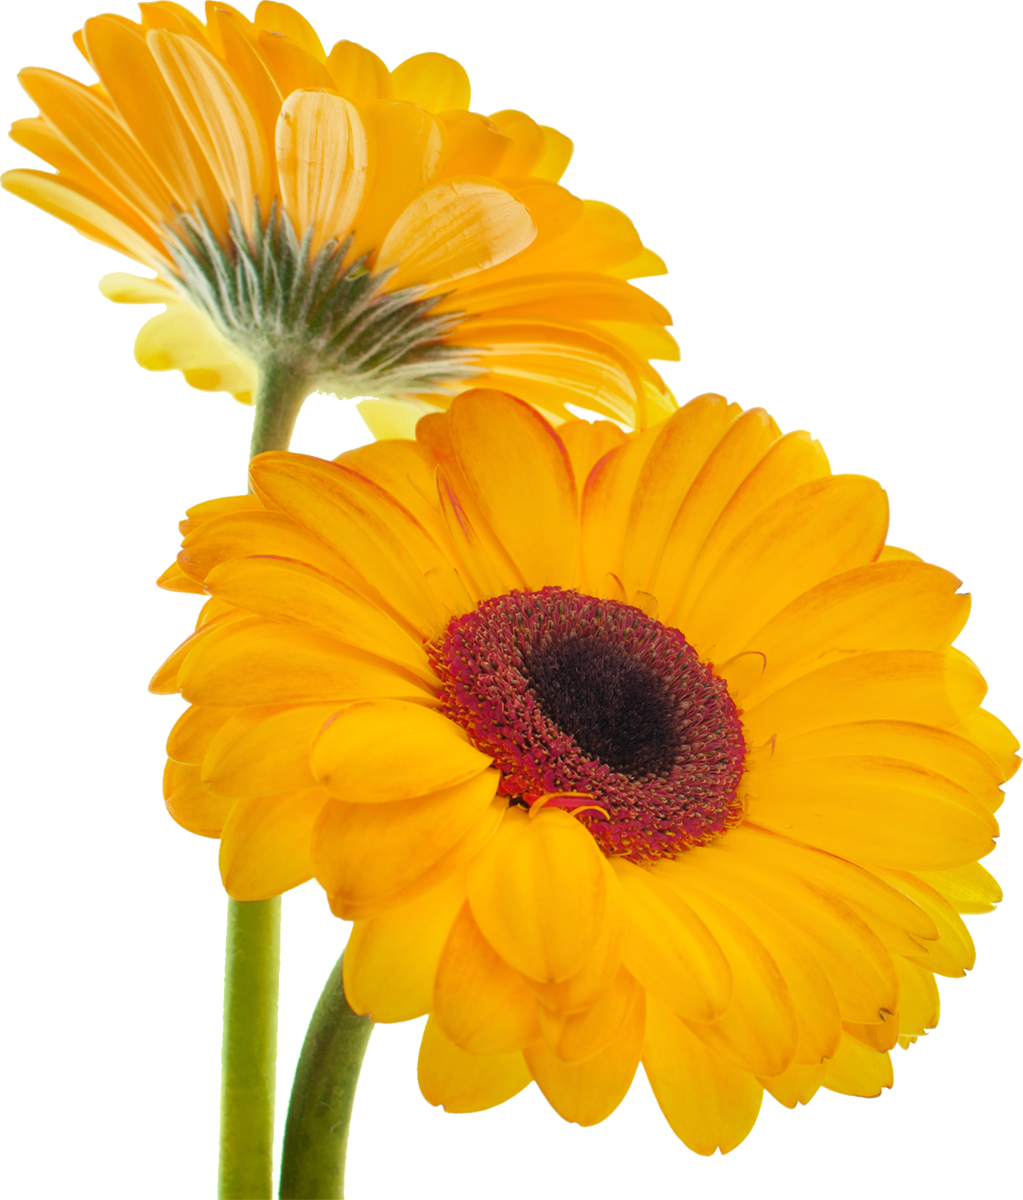 花や葉の写真 画像 フリー素材 No 058 黄色 ガーベラ 二輪